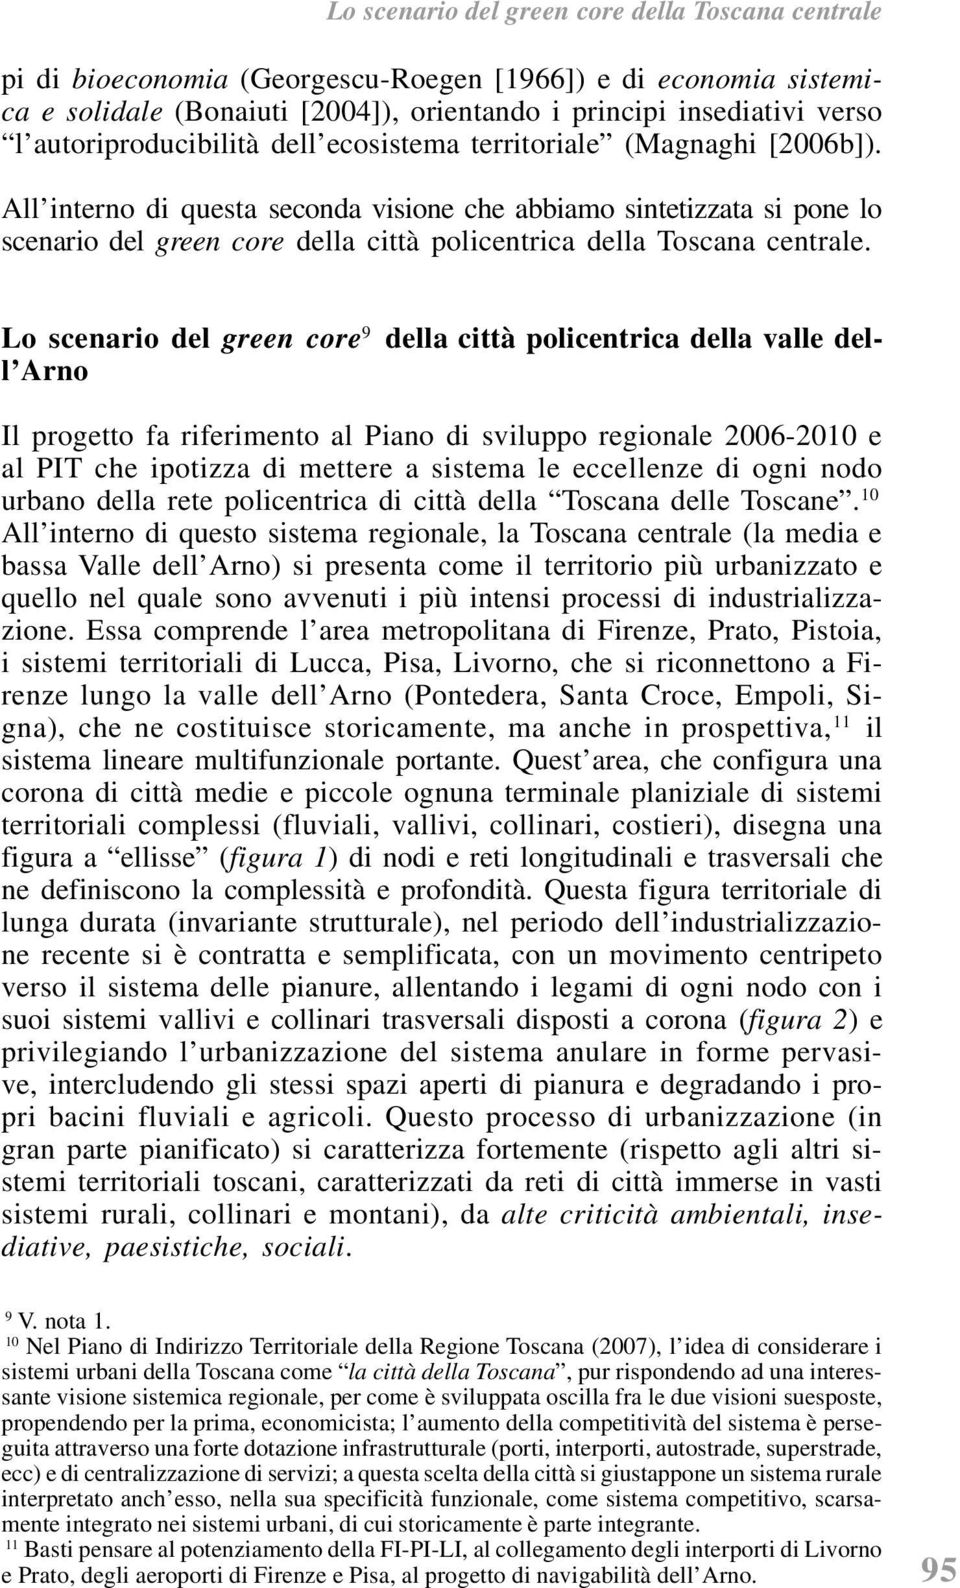 All interno di questa seconda visione che abbiamo sintetizzata si pone lo scenario del green core della città policentrica della Toscana centrale.